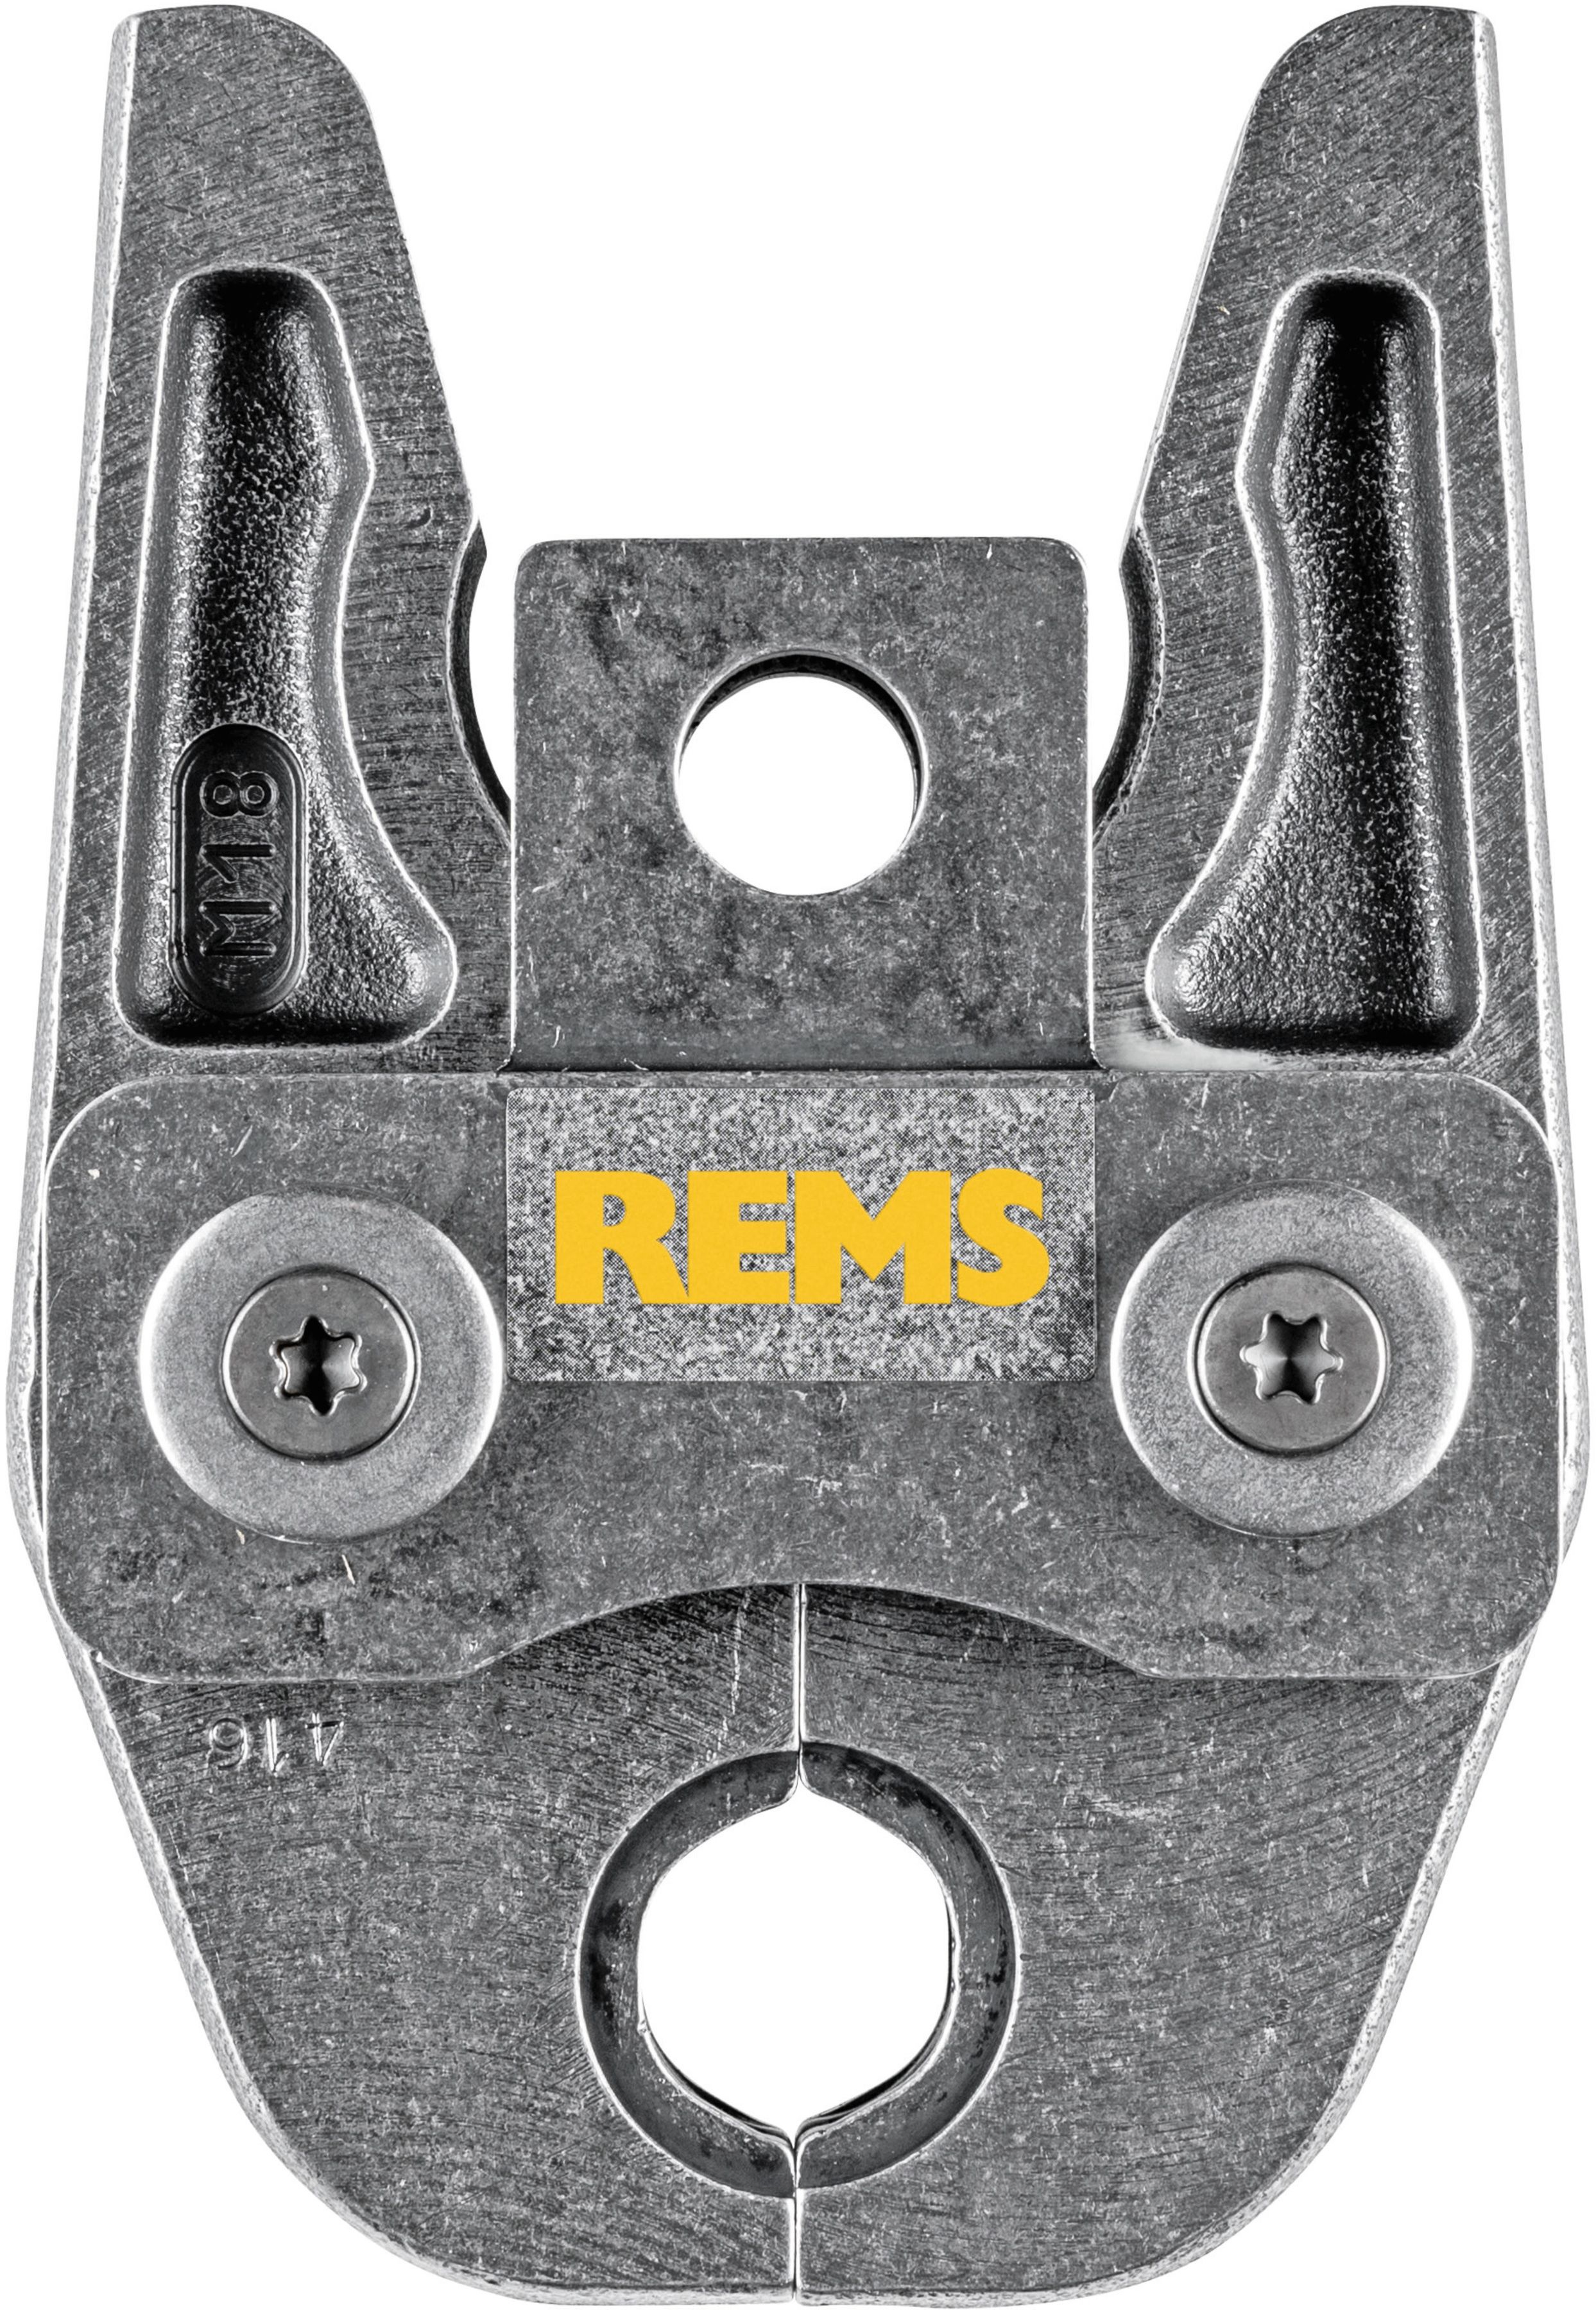 REMS Presszange 570130, M22 - Sanitärwerkzeuge